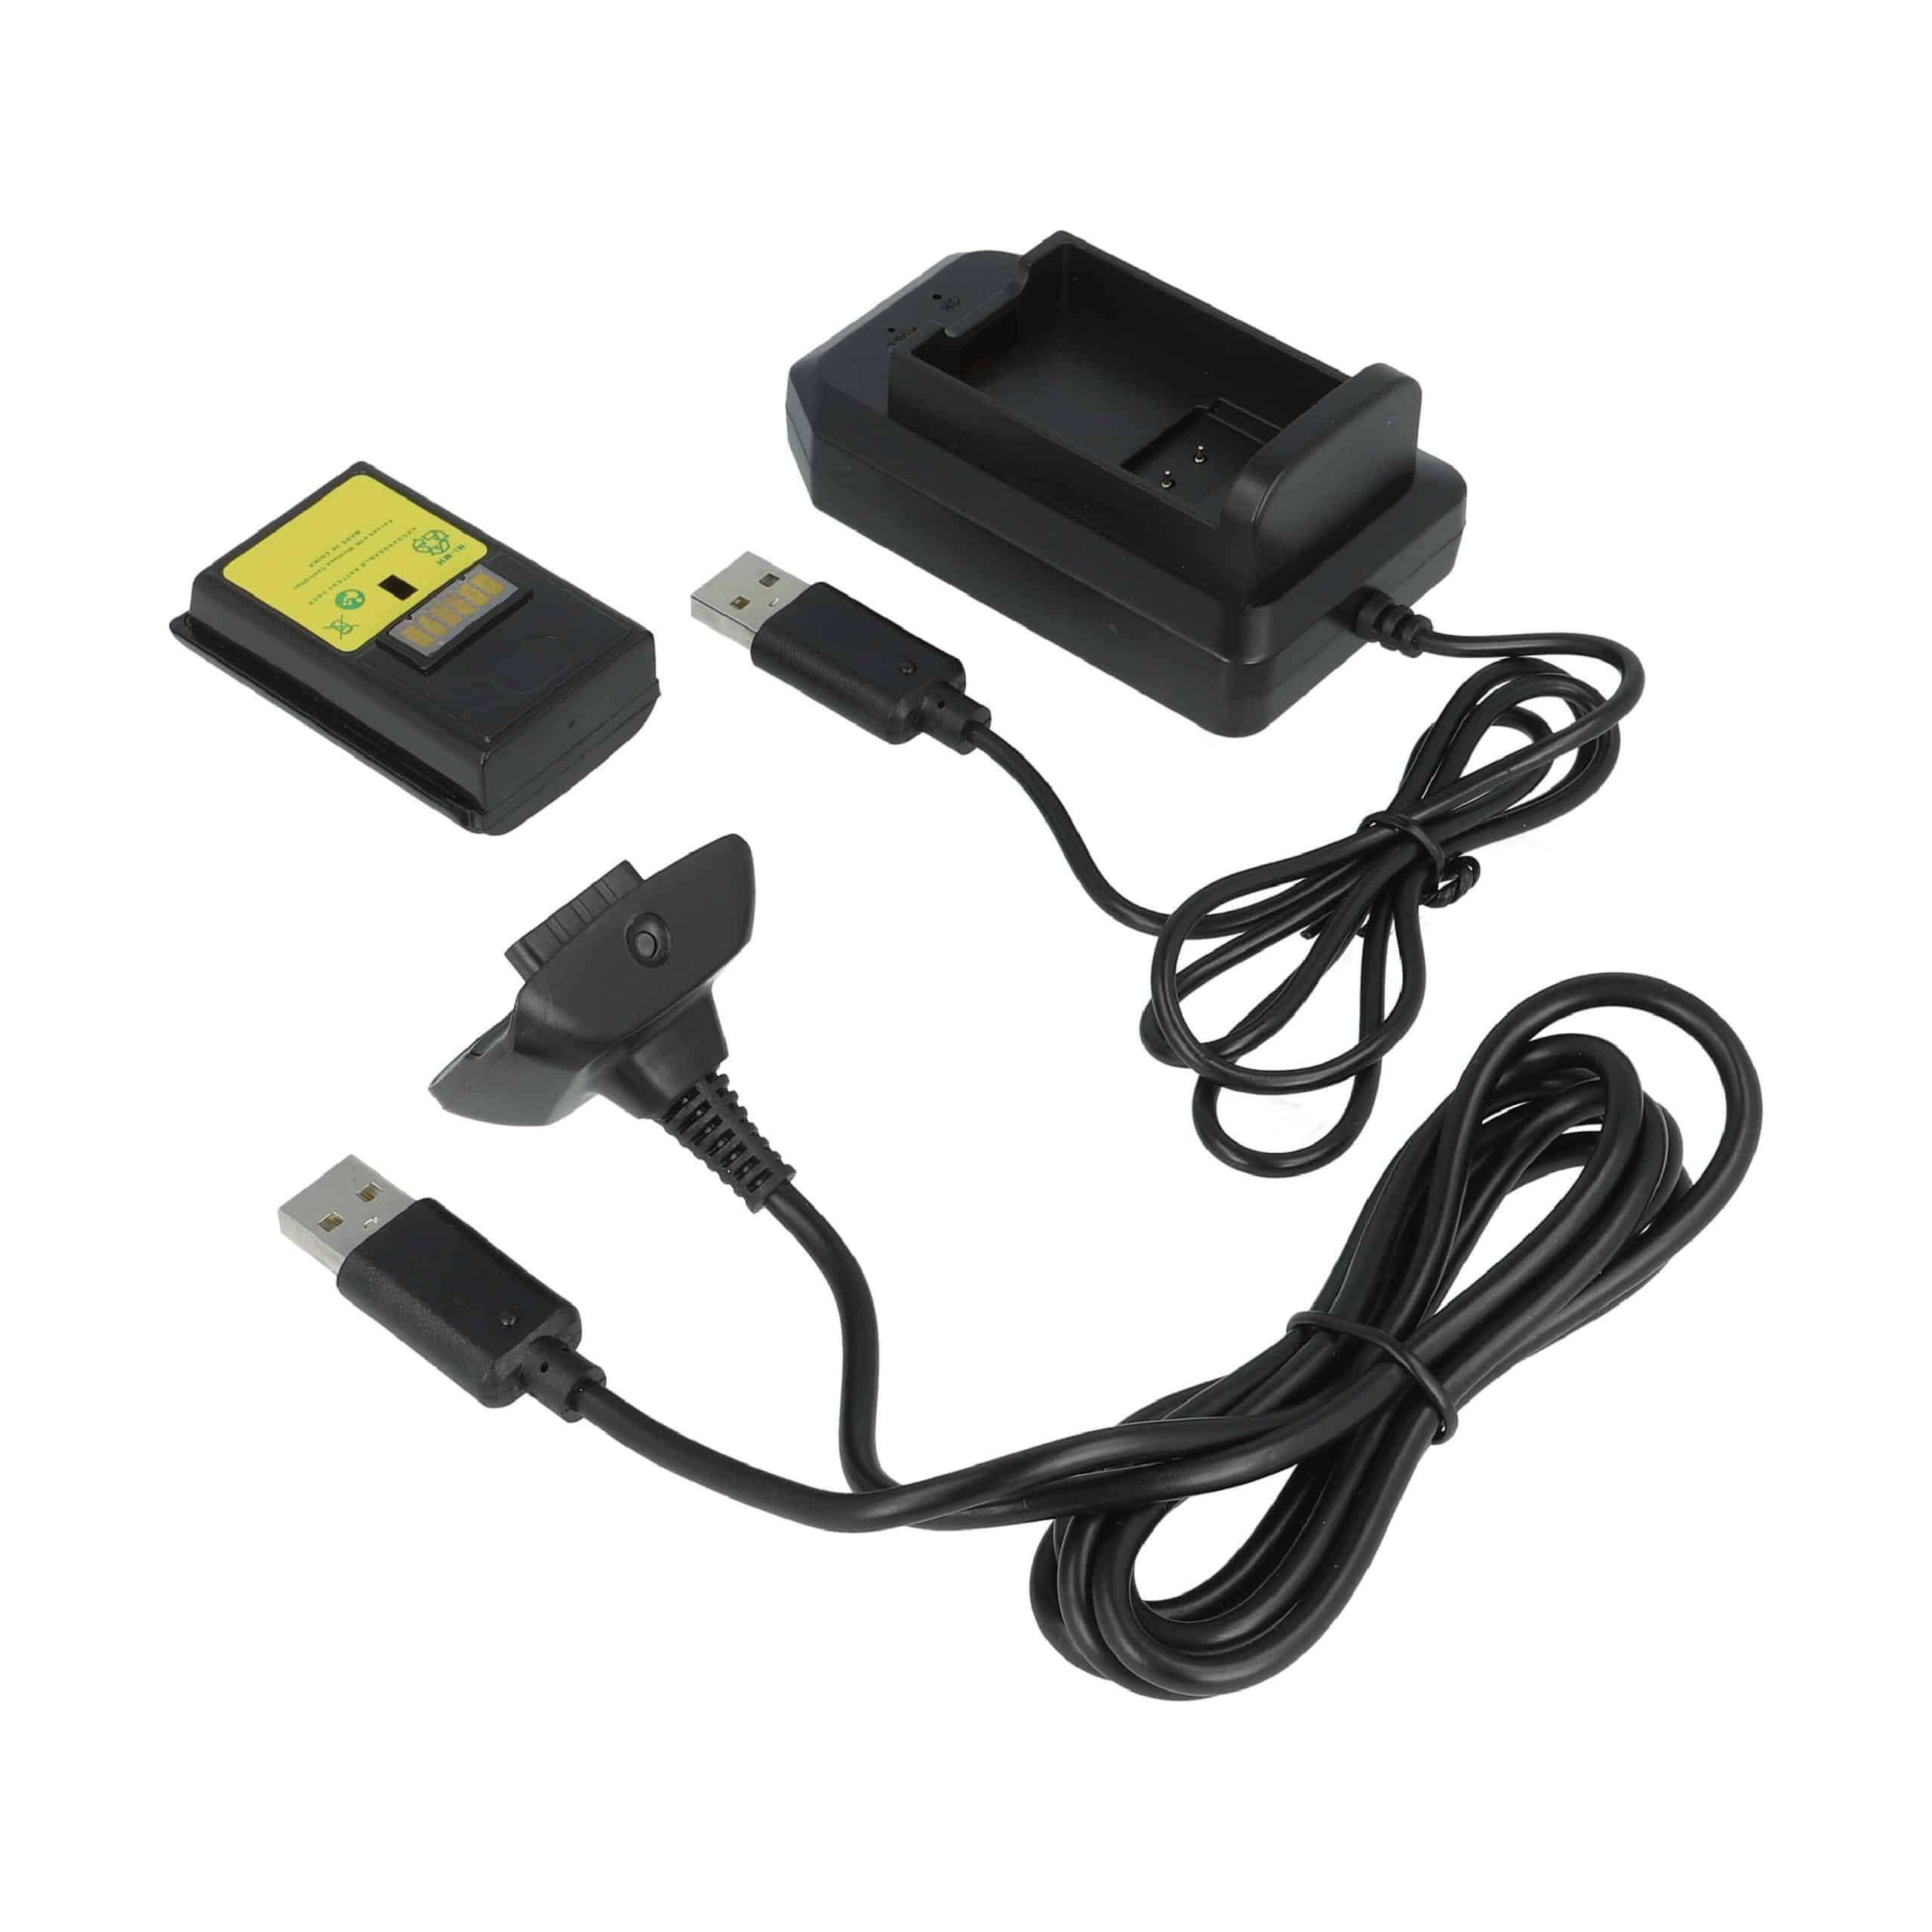 Zestaw Play&Charge Kit Microsoft Xbox 360 - 1x ładowarka, 1x przewód zasilający, 1x akumulator, czarny